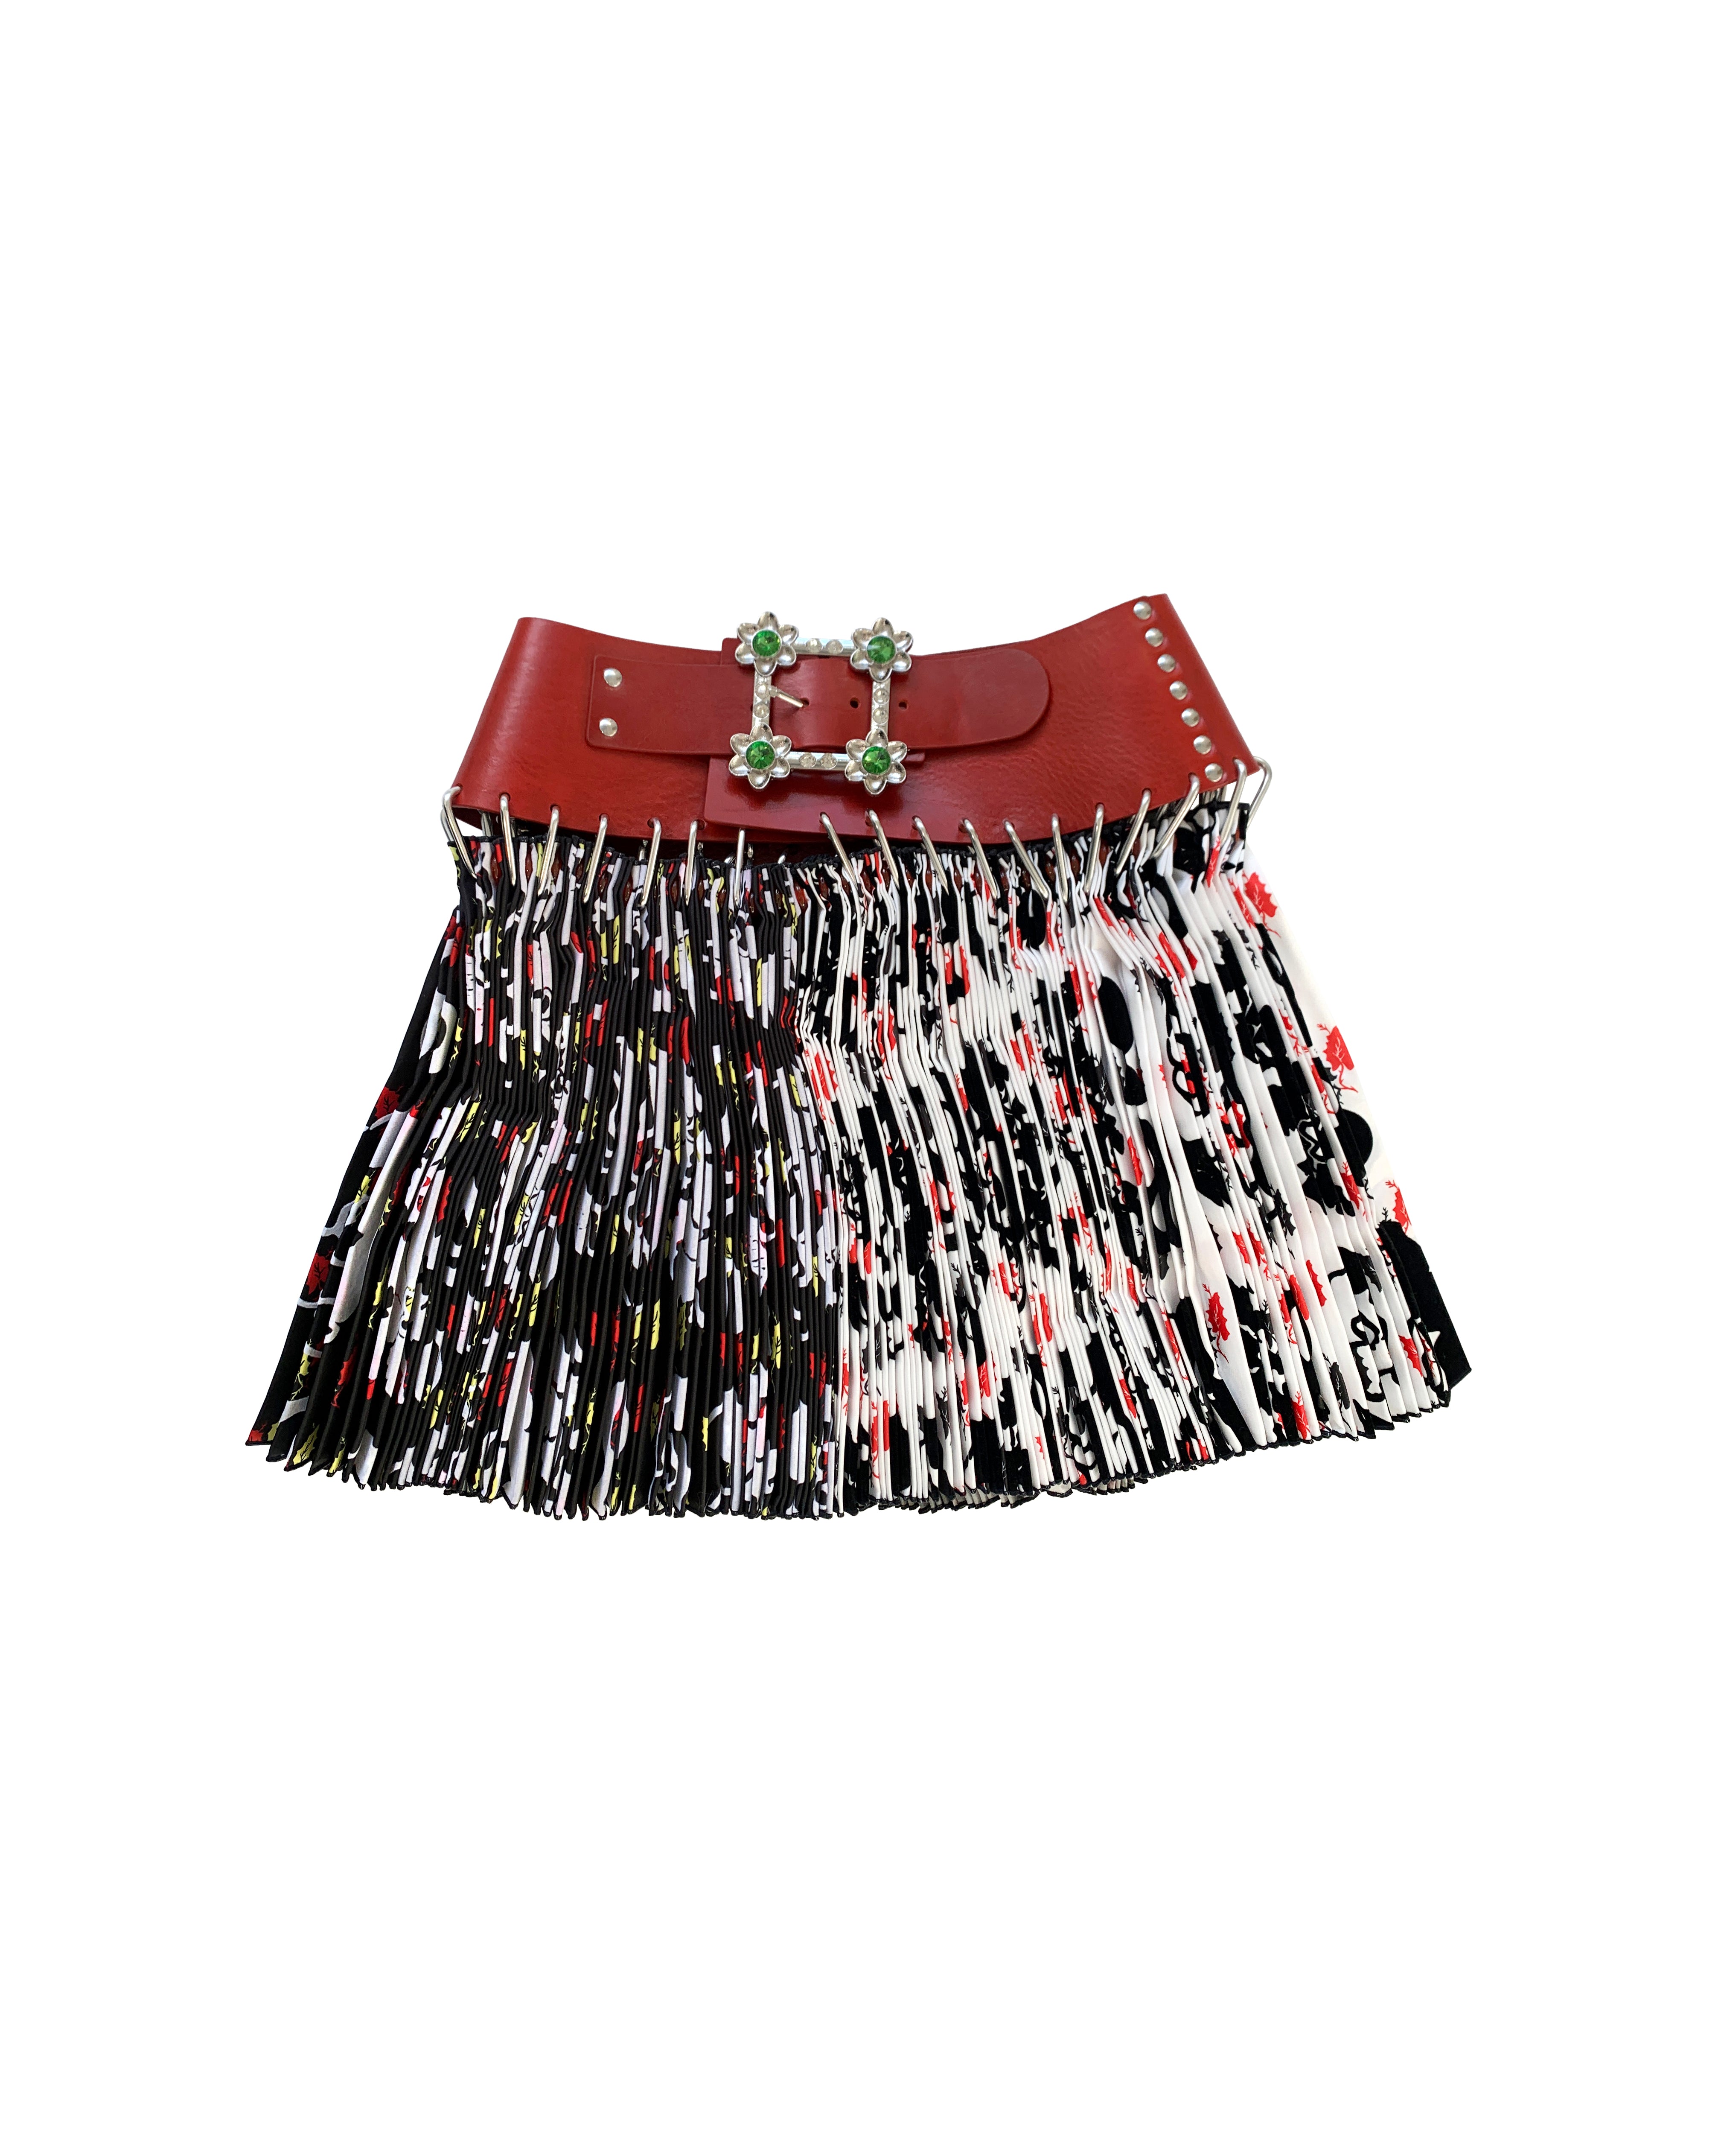 EXCLUSIVE Rain Carabiner Mini Skirt – Chopova Lowena